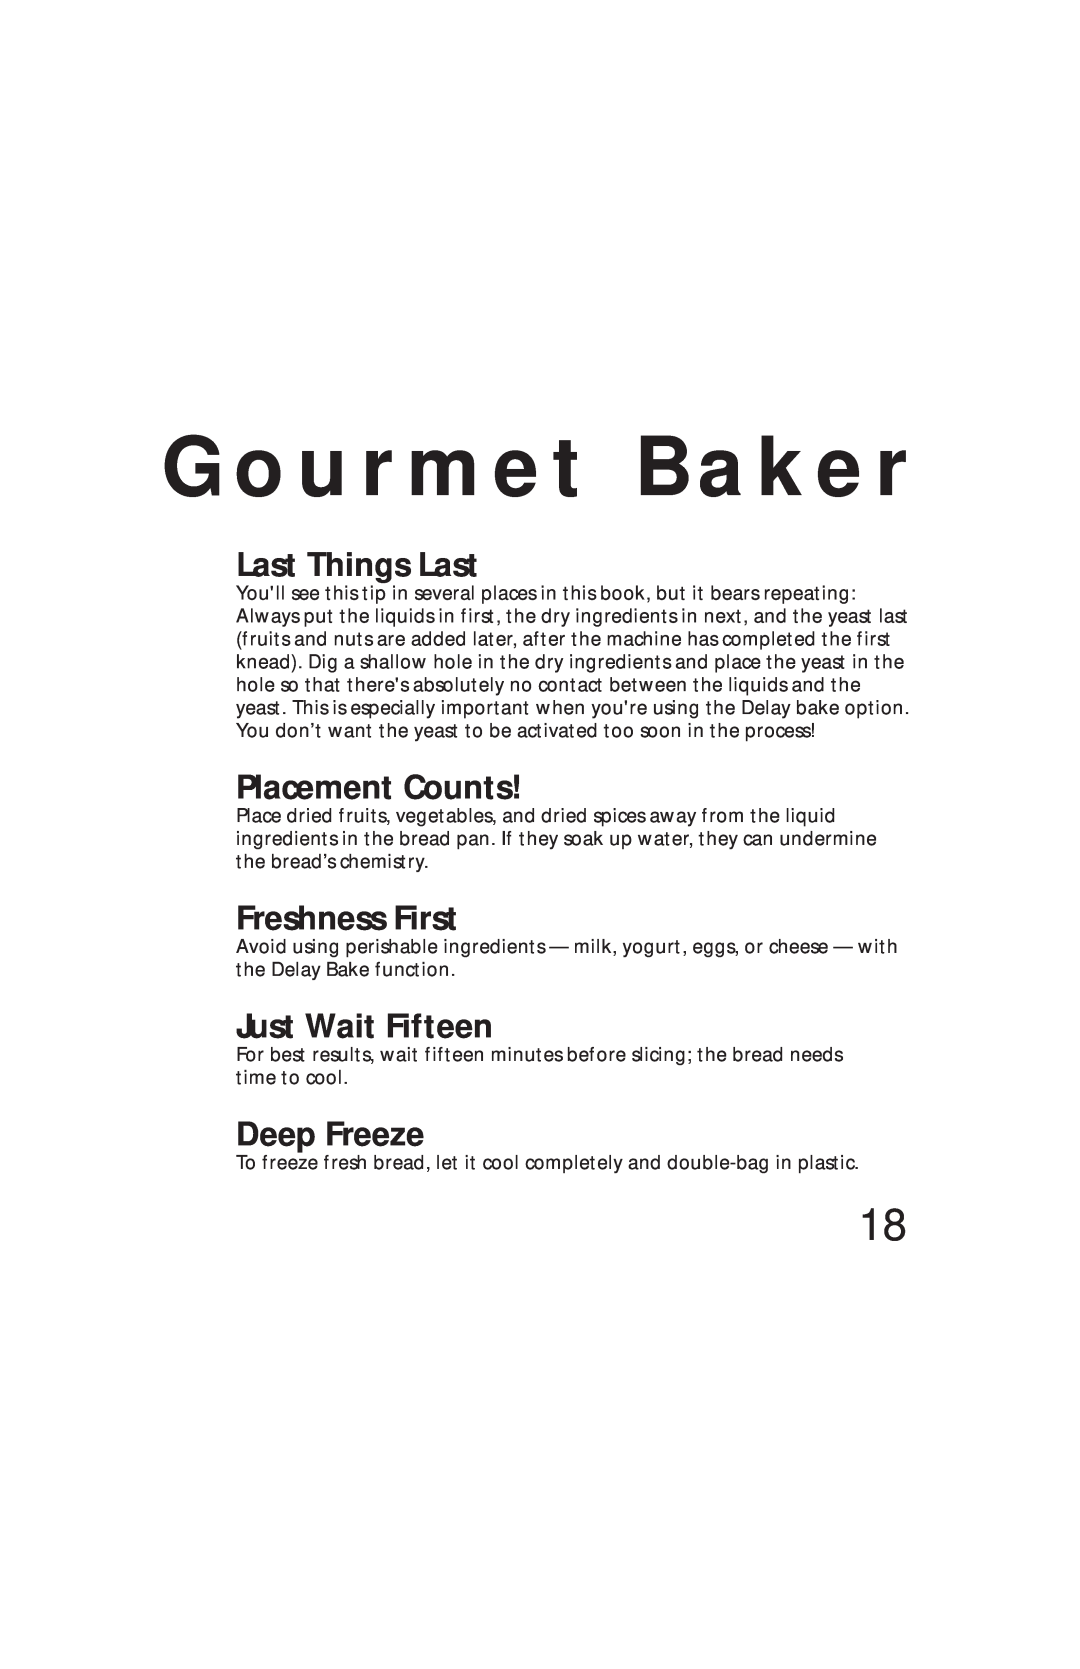 Oster Bread & Dough Maker manual G o u r m e t B a k e r, Placement Counts, Freshness First, Just Wait Fifteen, Deep Freeze 